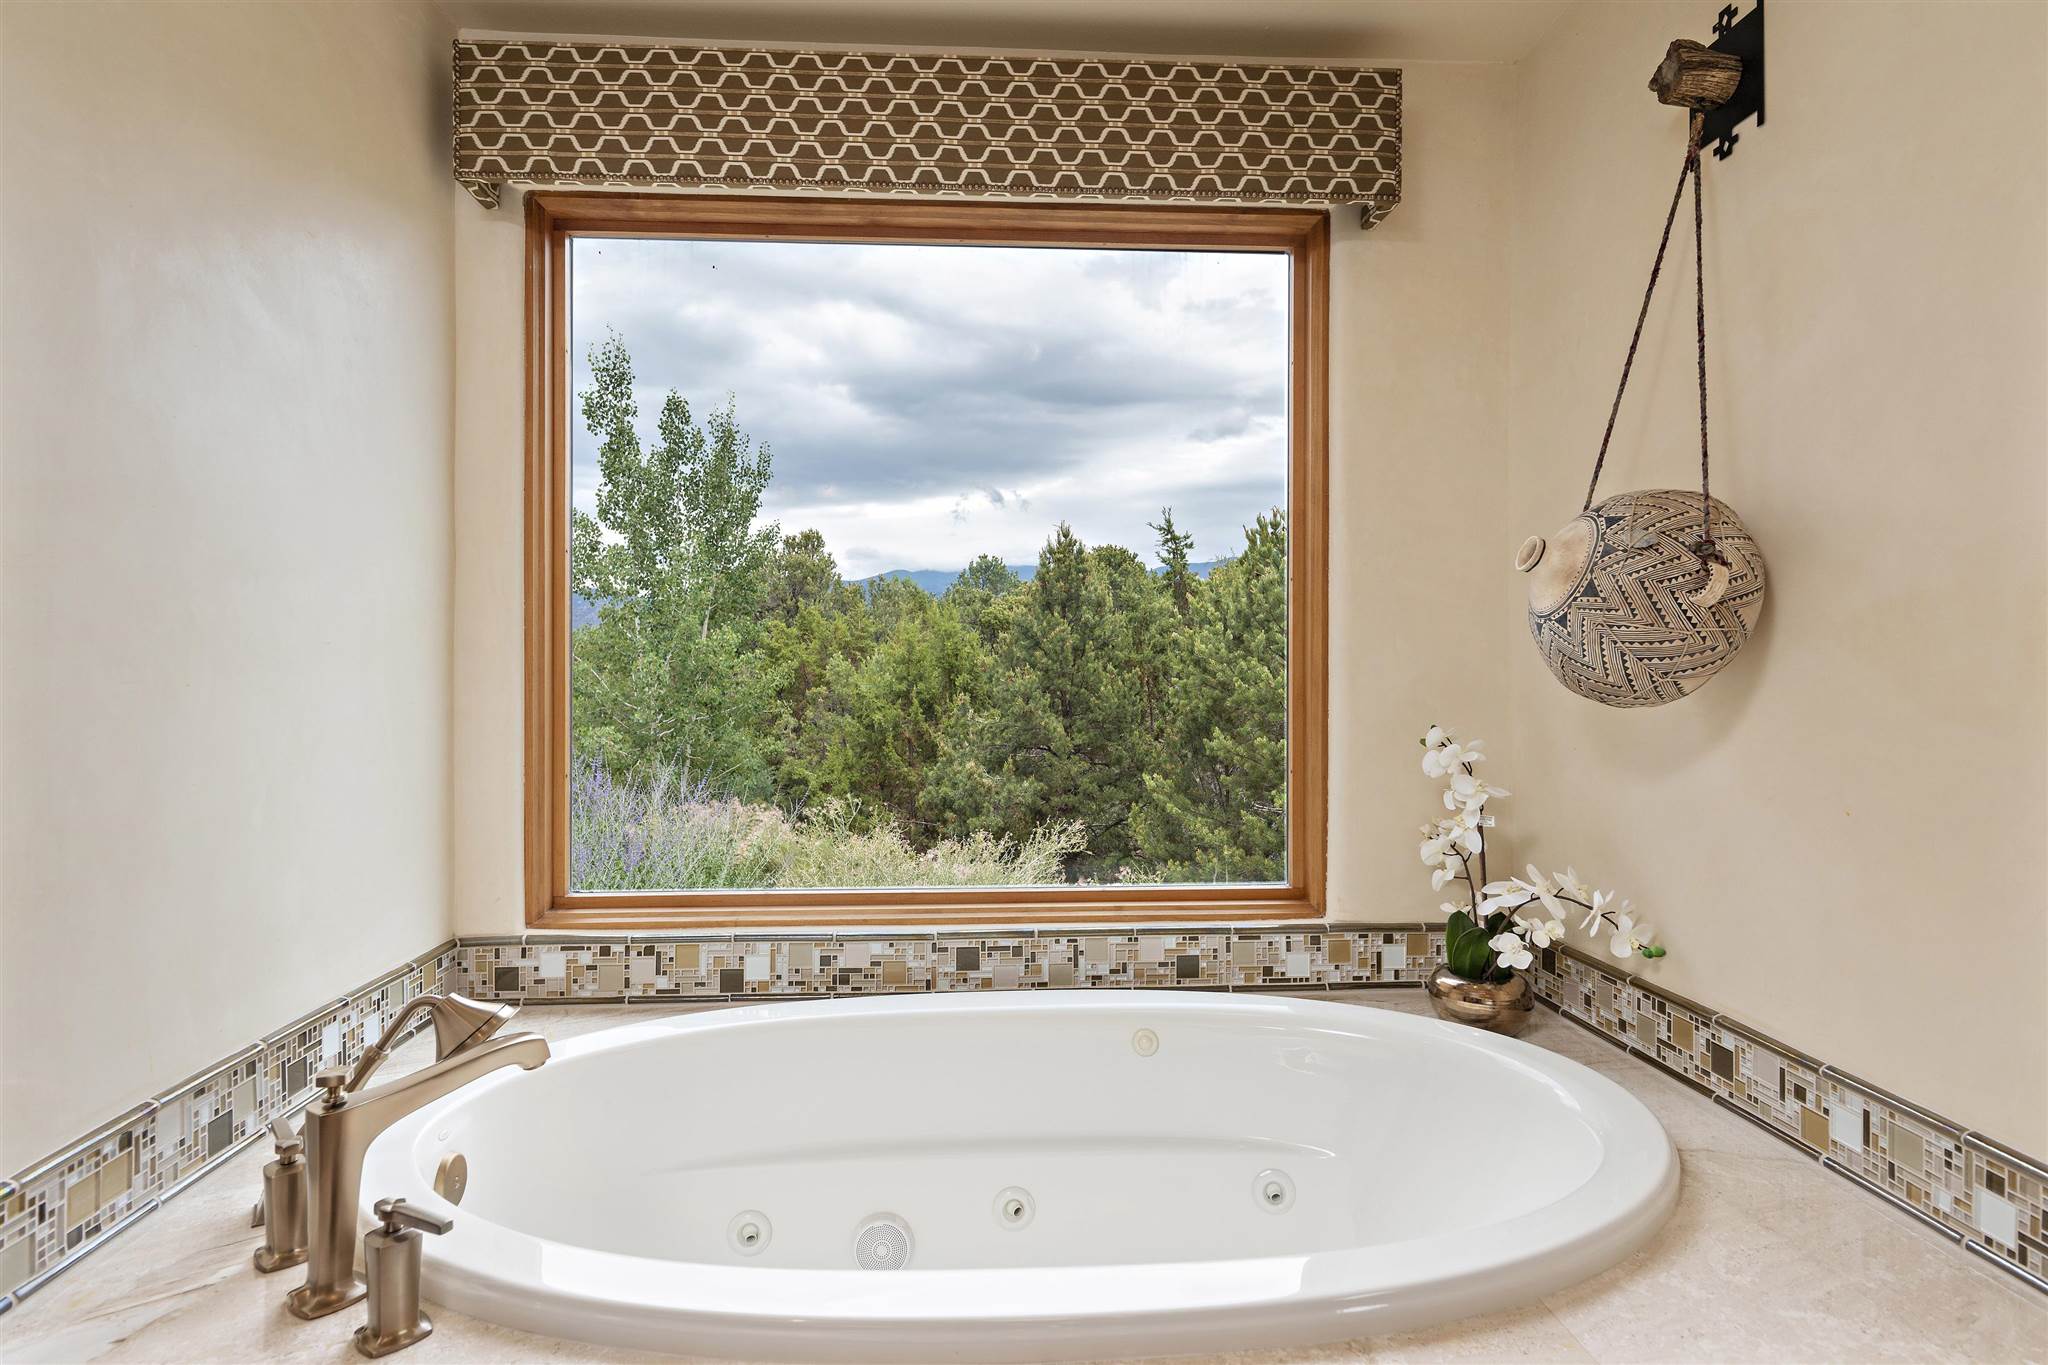 3053 Monte Sereno, Santa Fe, New Mexico 87506, 4 Bedrooms Bedrooms, ,5 BathroomsBathrooms,Residential,For Sale,3053 Monte Sereno,202102794